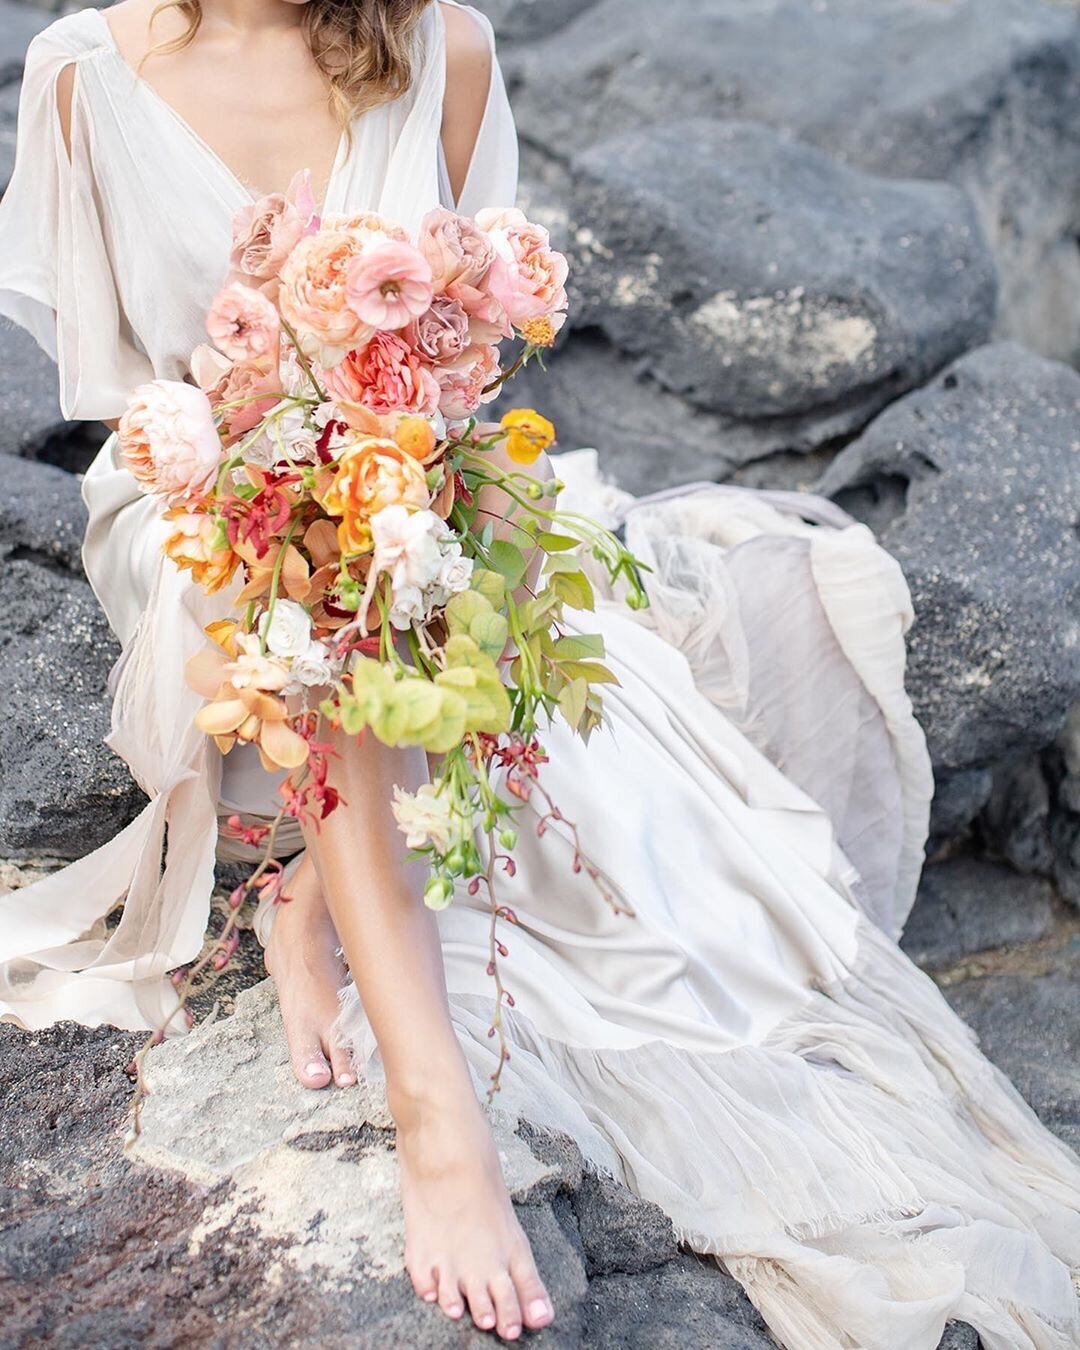 Tropical-bridal-bouquet- designs-byhemingway